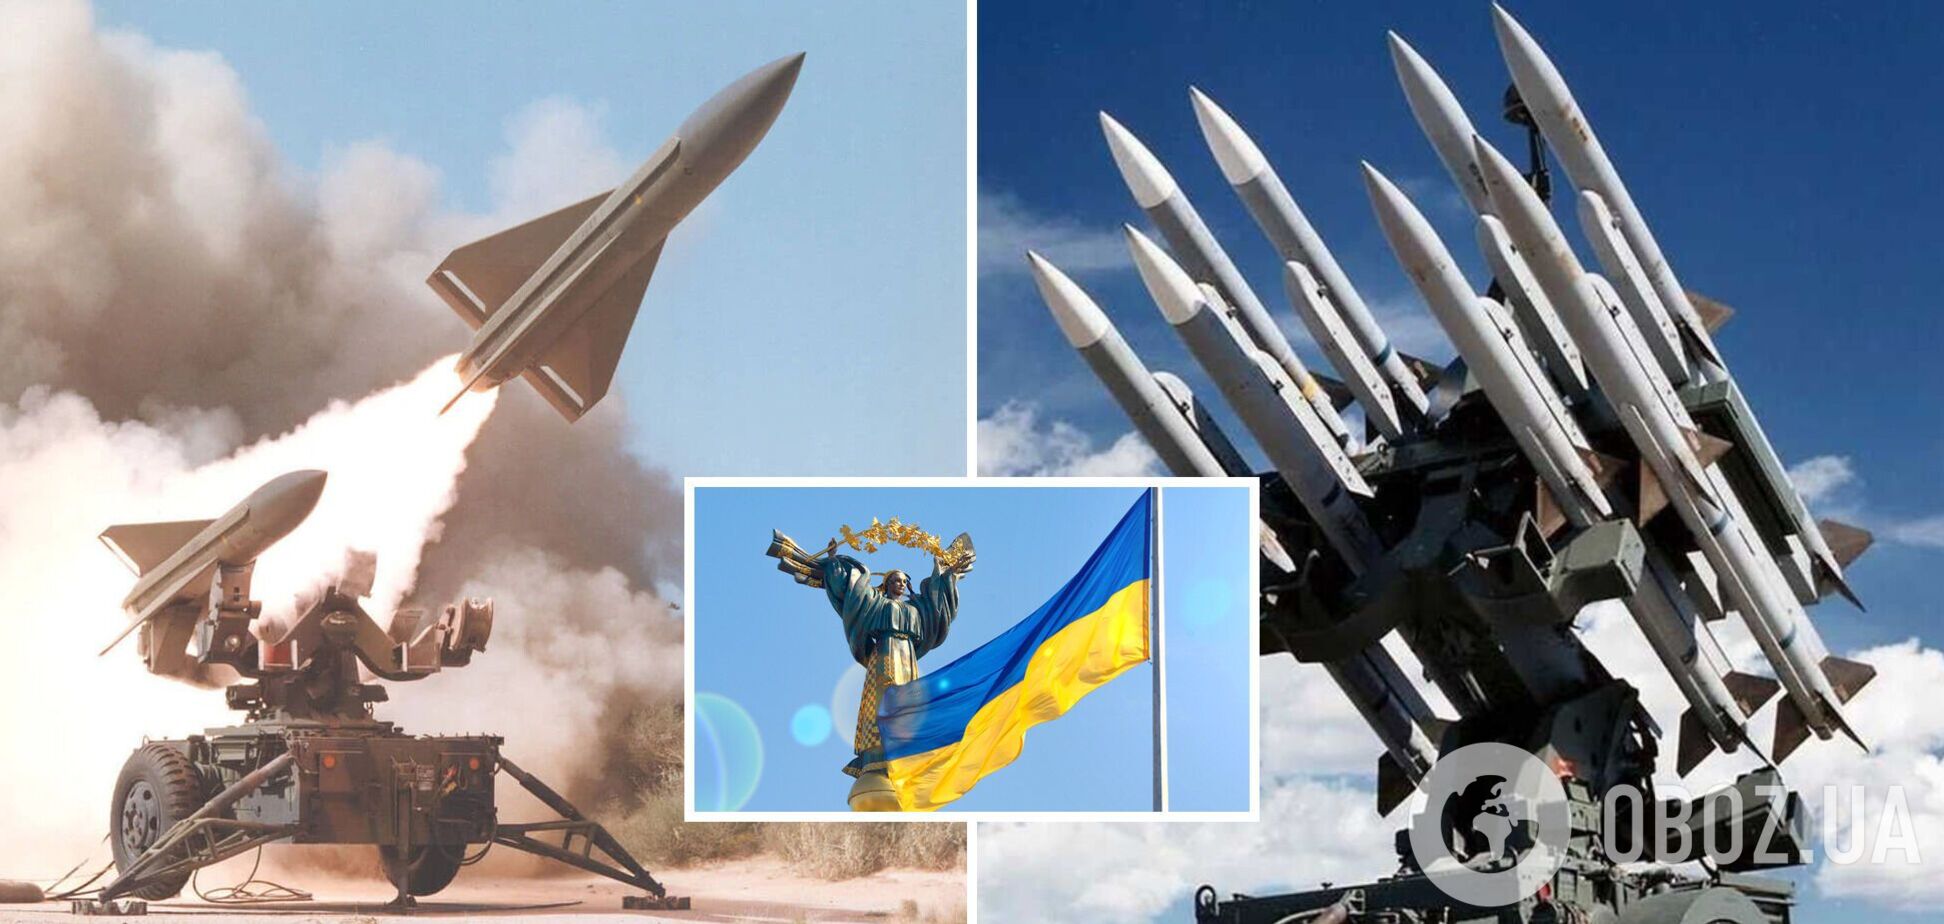 Украина разработала собственную систему ПВО средней дальности, близкую к Hawk, – нардеп Чернев